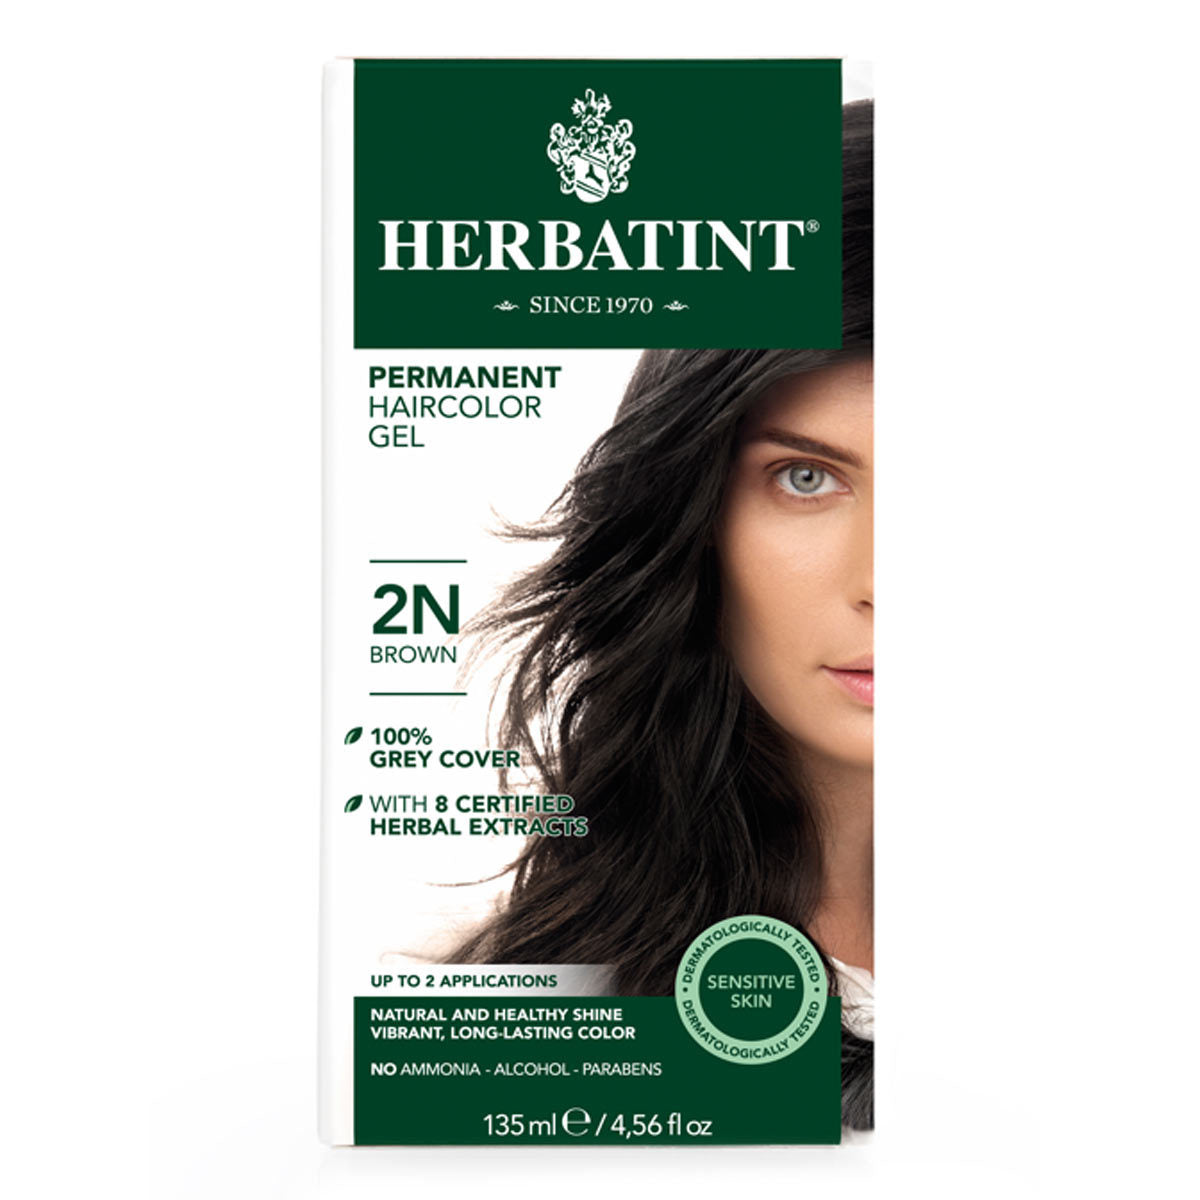 Primary image of 2N Brown Permanent Hair Color Gel